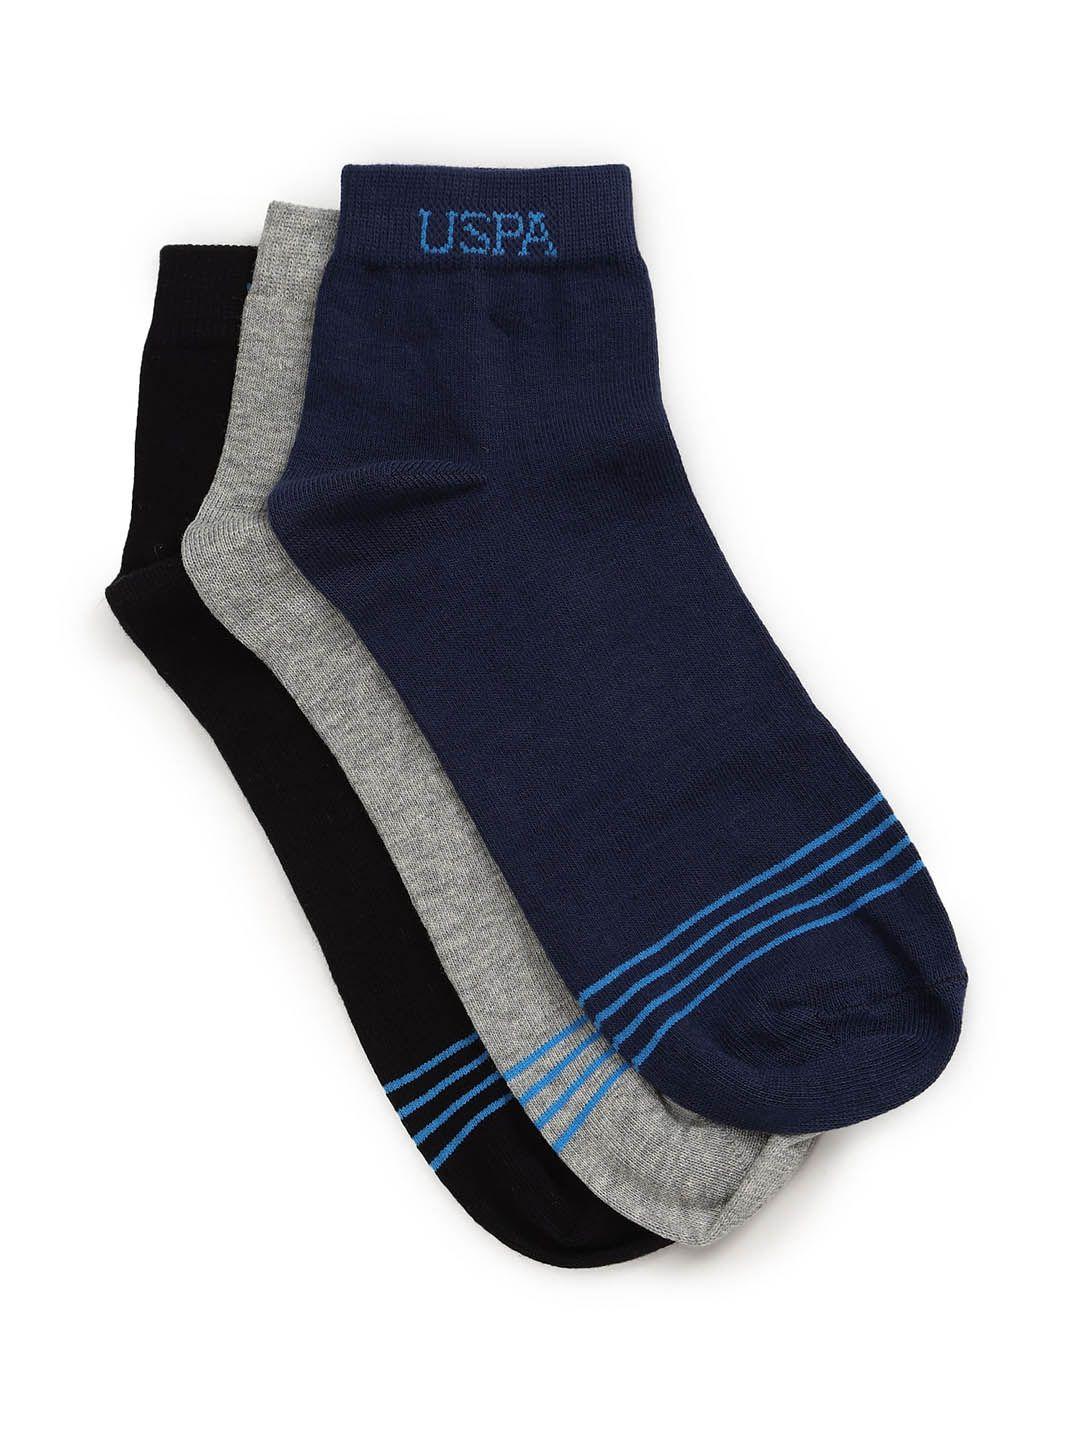 u.s. polo assn. men pack of 3 ankle-length socks